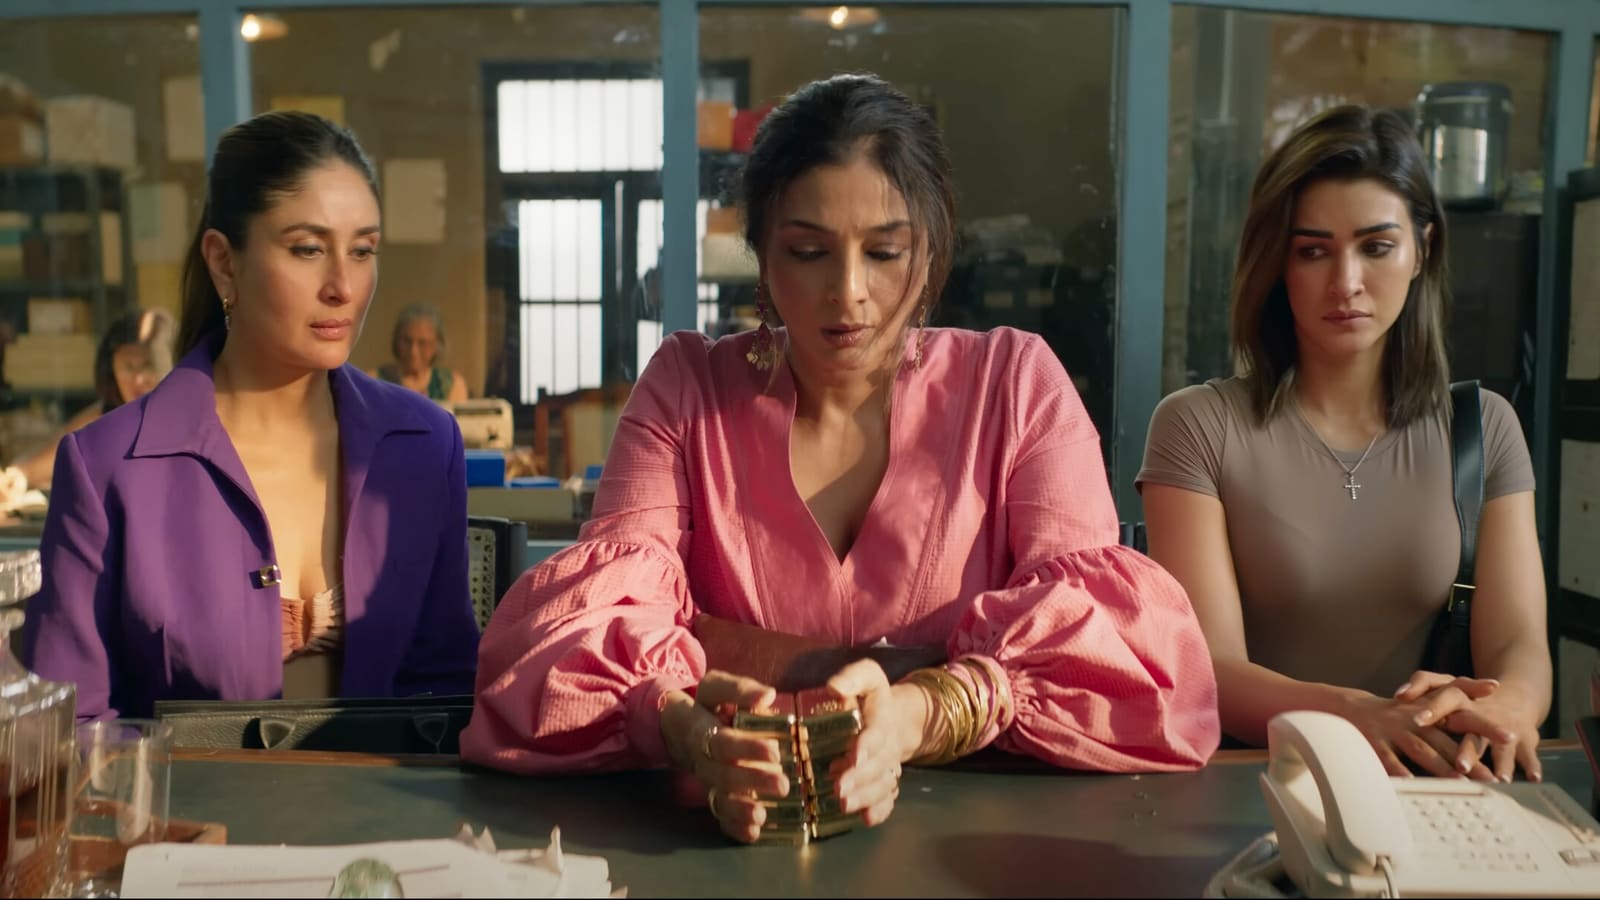 Kolekcja kasowa ekipy na całym świecie, dzień 3: „Supergwiazda” Kareena Kapoor dostarcza kolejny hit, a film zarabia 62 crore funtów |  Bollywood